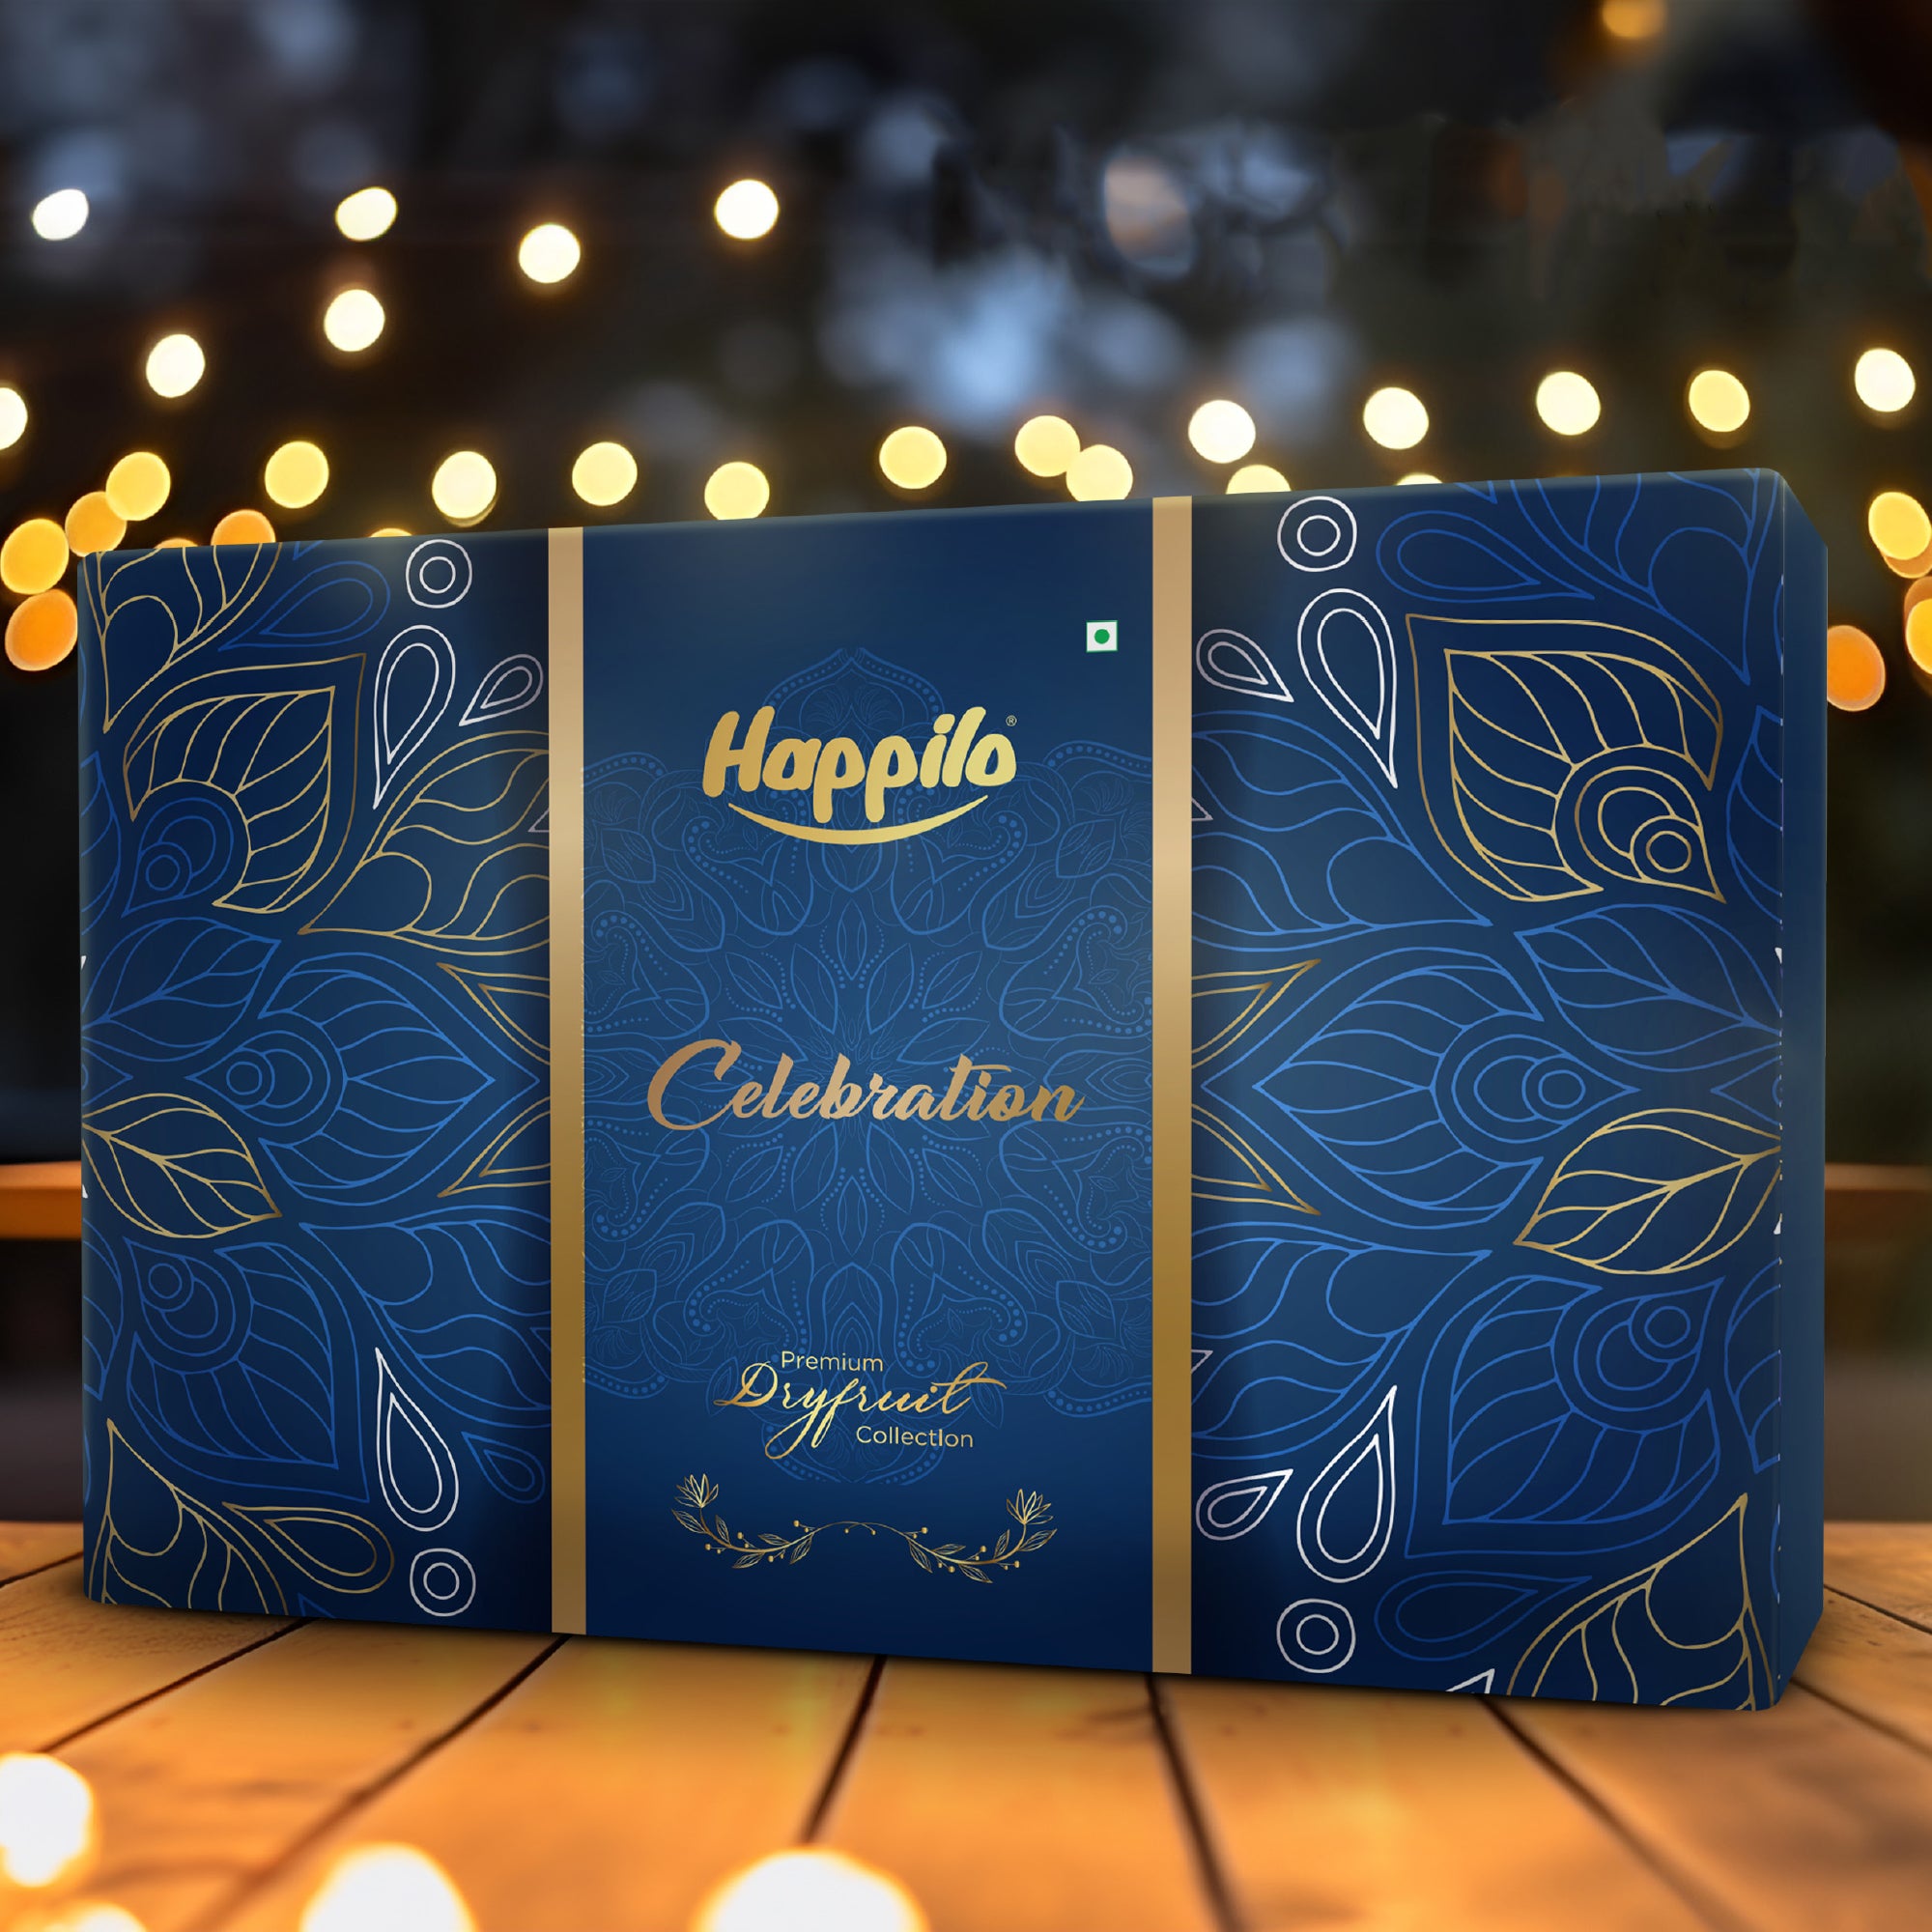 Happilo Dry Fruit Celebration Gift Box Nightingale